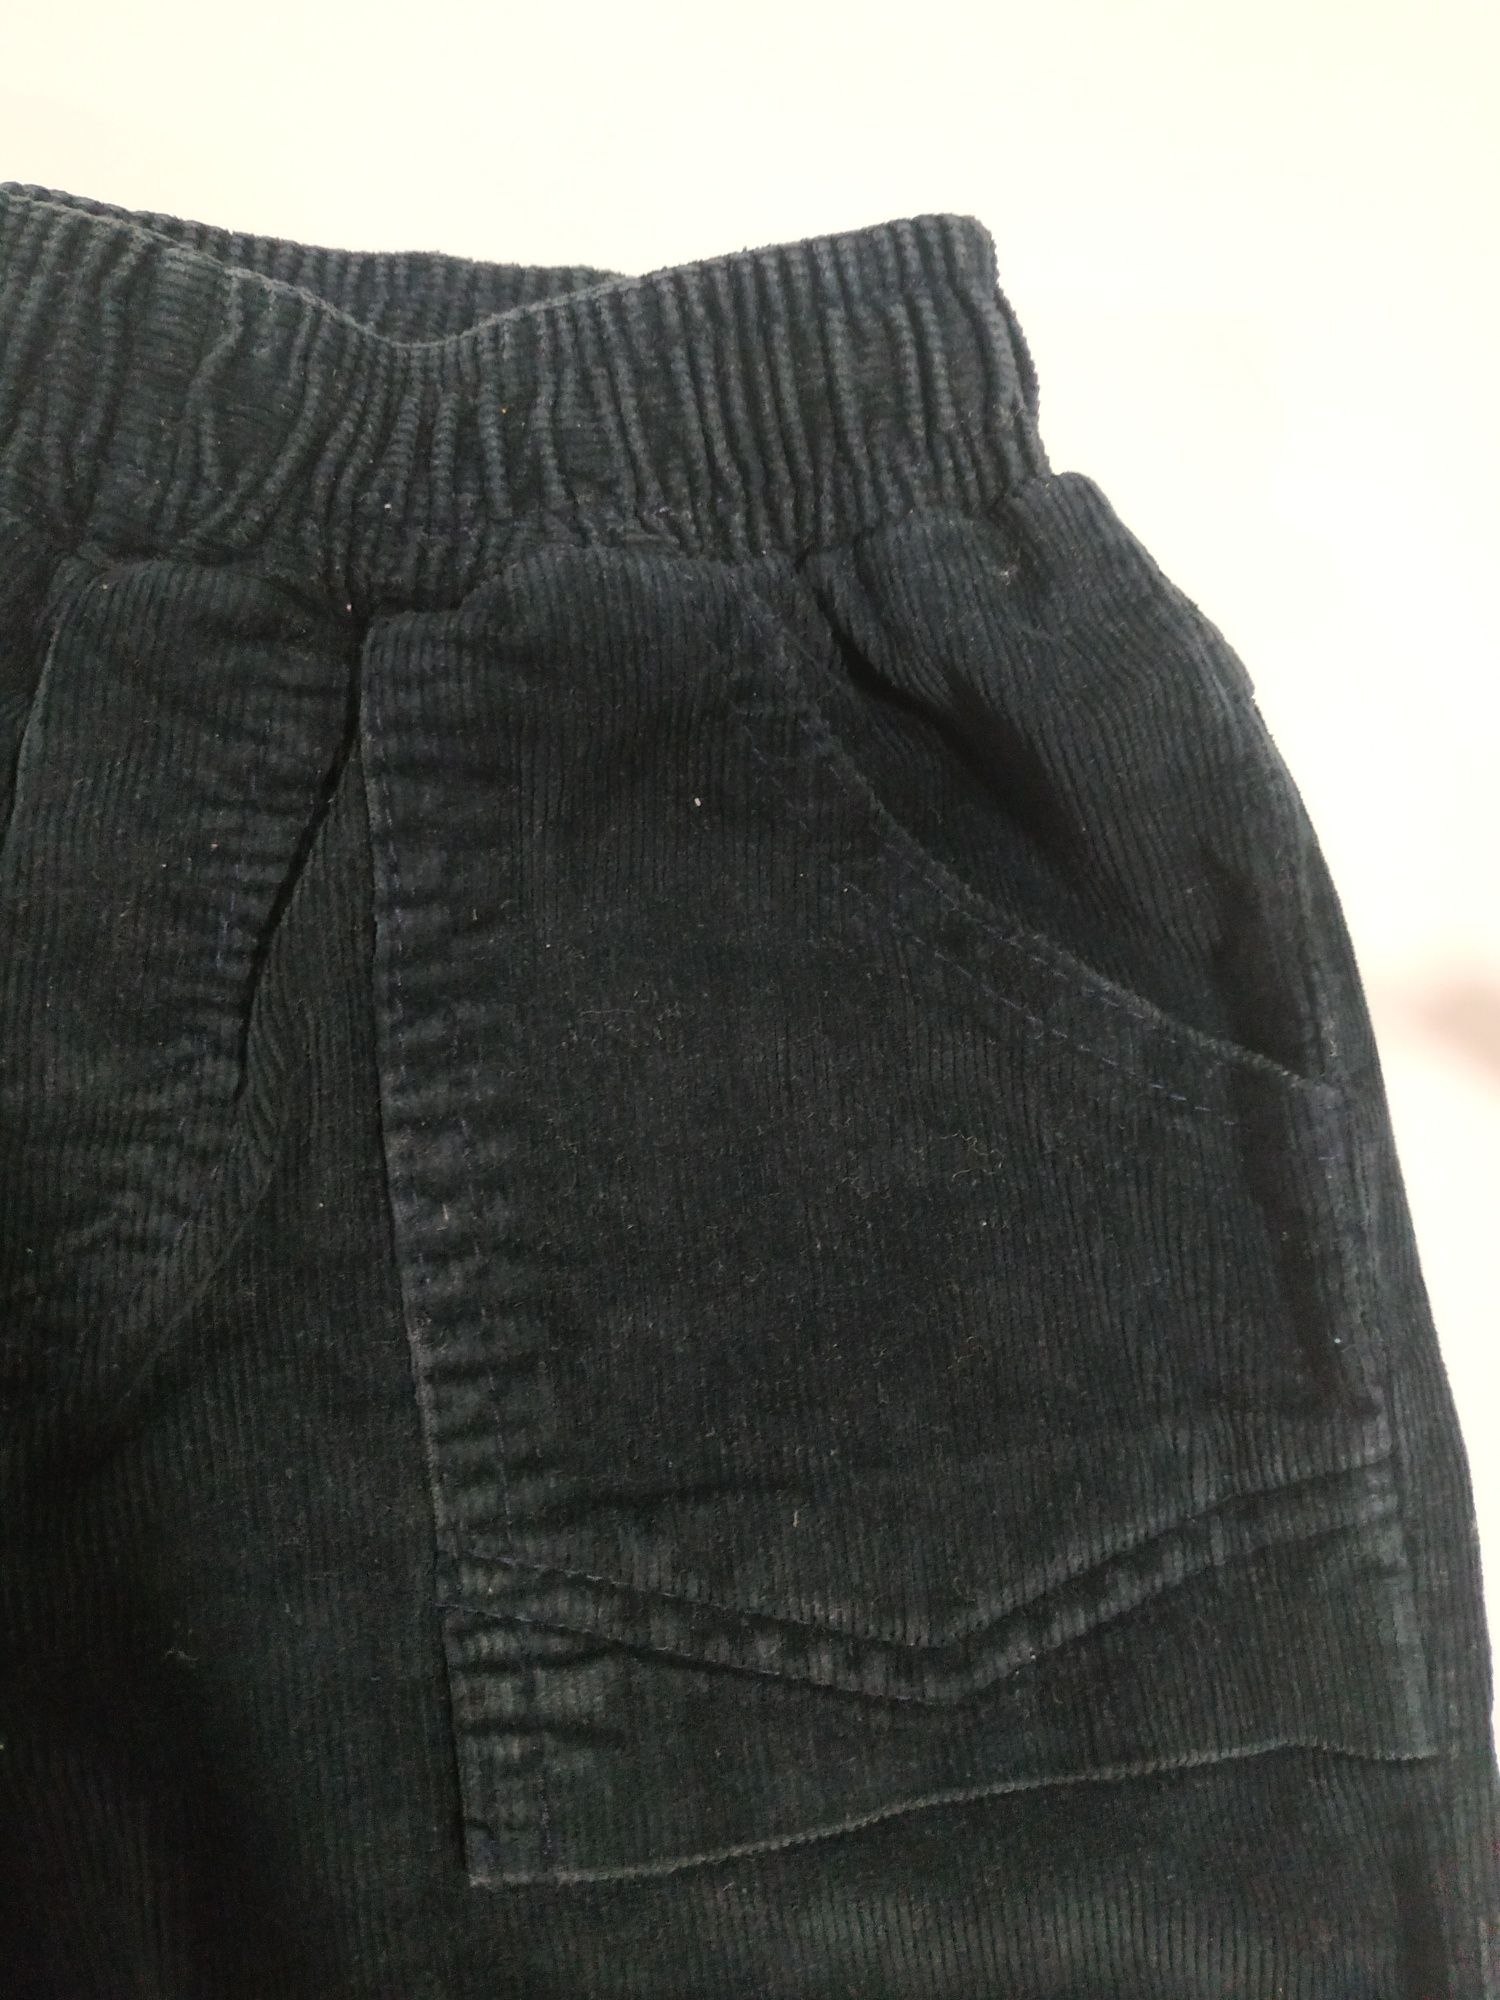 Spodnie chłopięce ze sztruksu, rozmiar 92